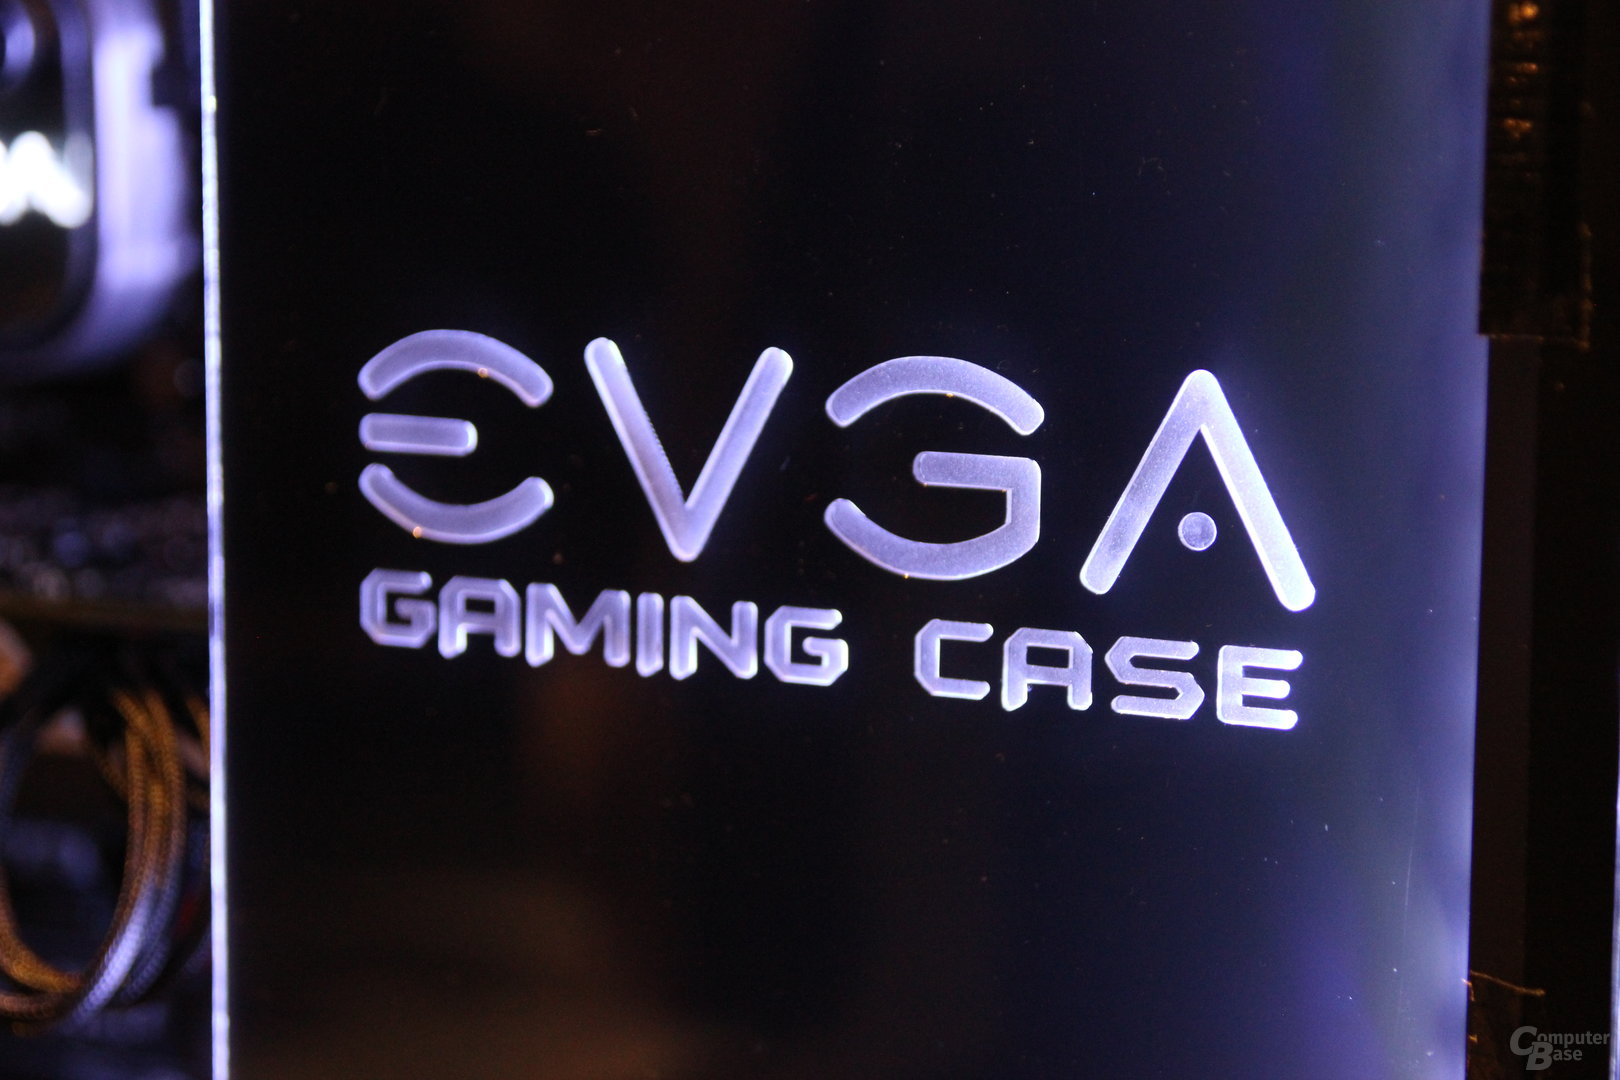 EVGA Gaming Case